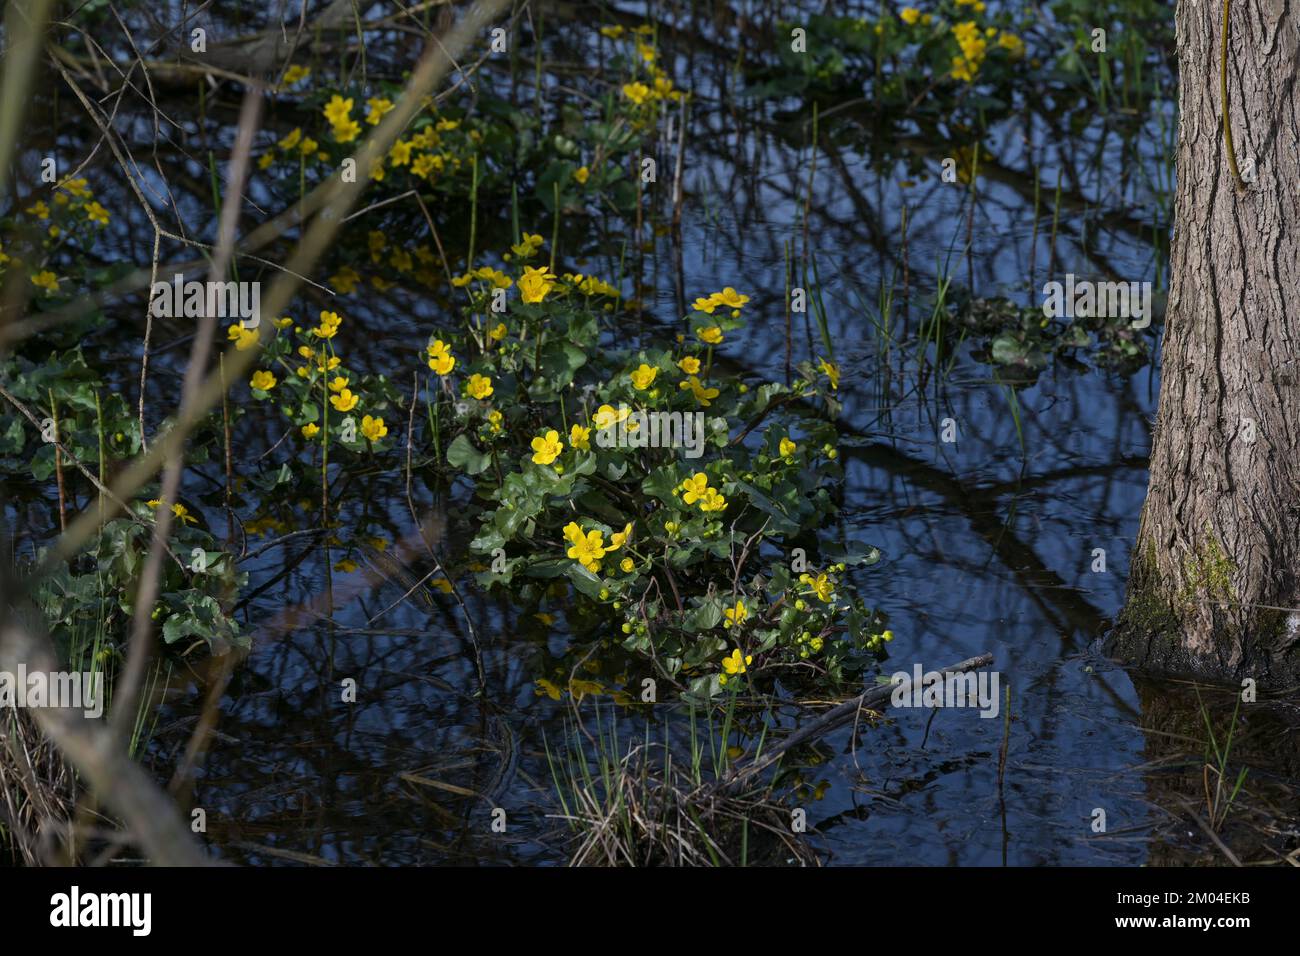 Blühende Marsholz (Caltha palustris) mit gelben Blumen im Frühling, dunkelblaues Wasser in einem Waldsee, Schönheit in der Natur, Umweltschutz Stockfoto